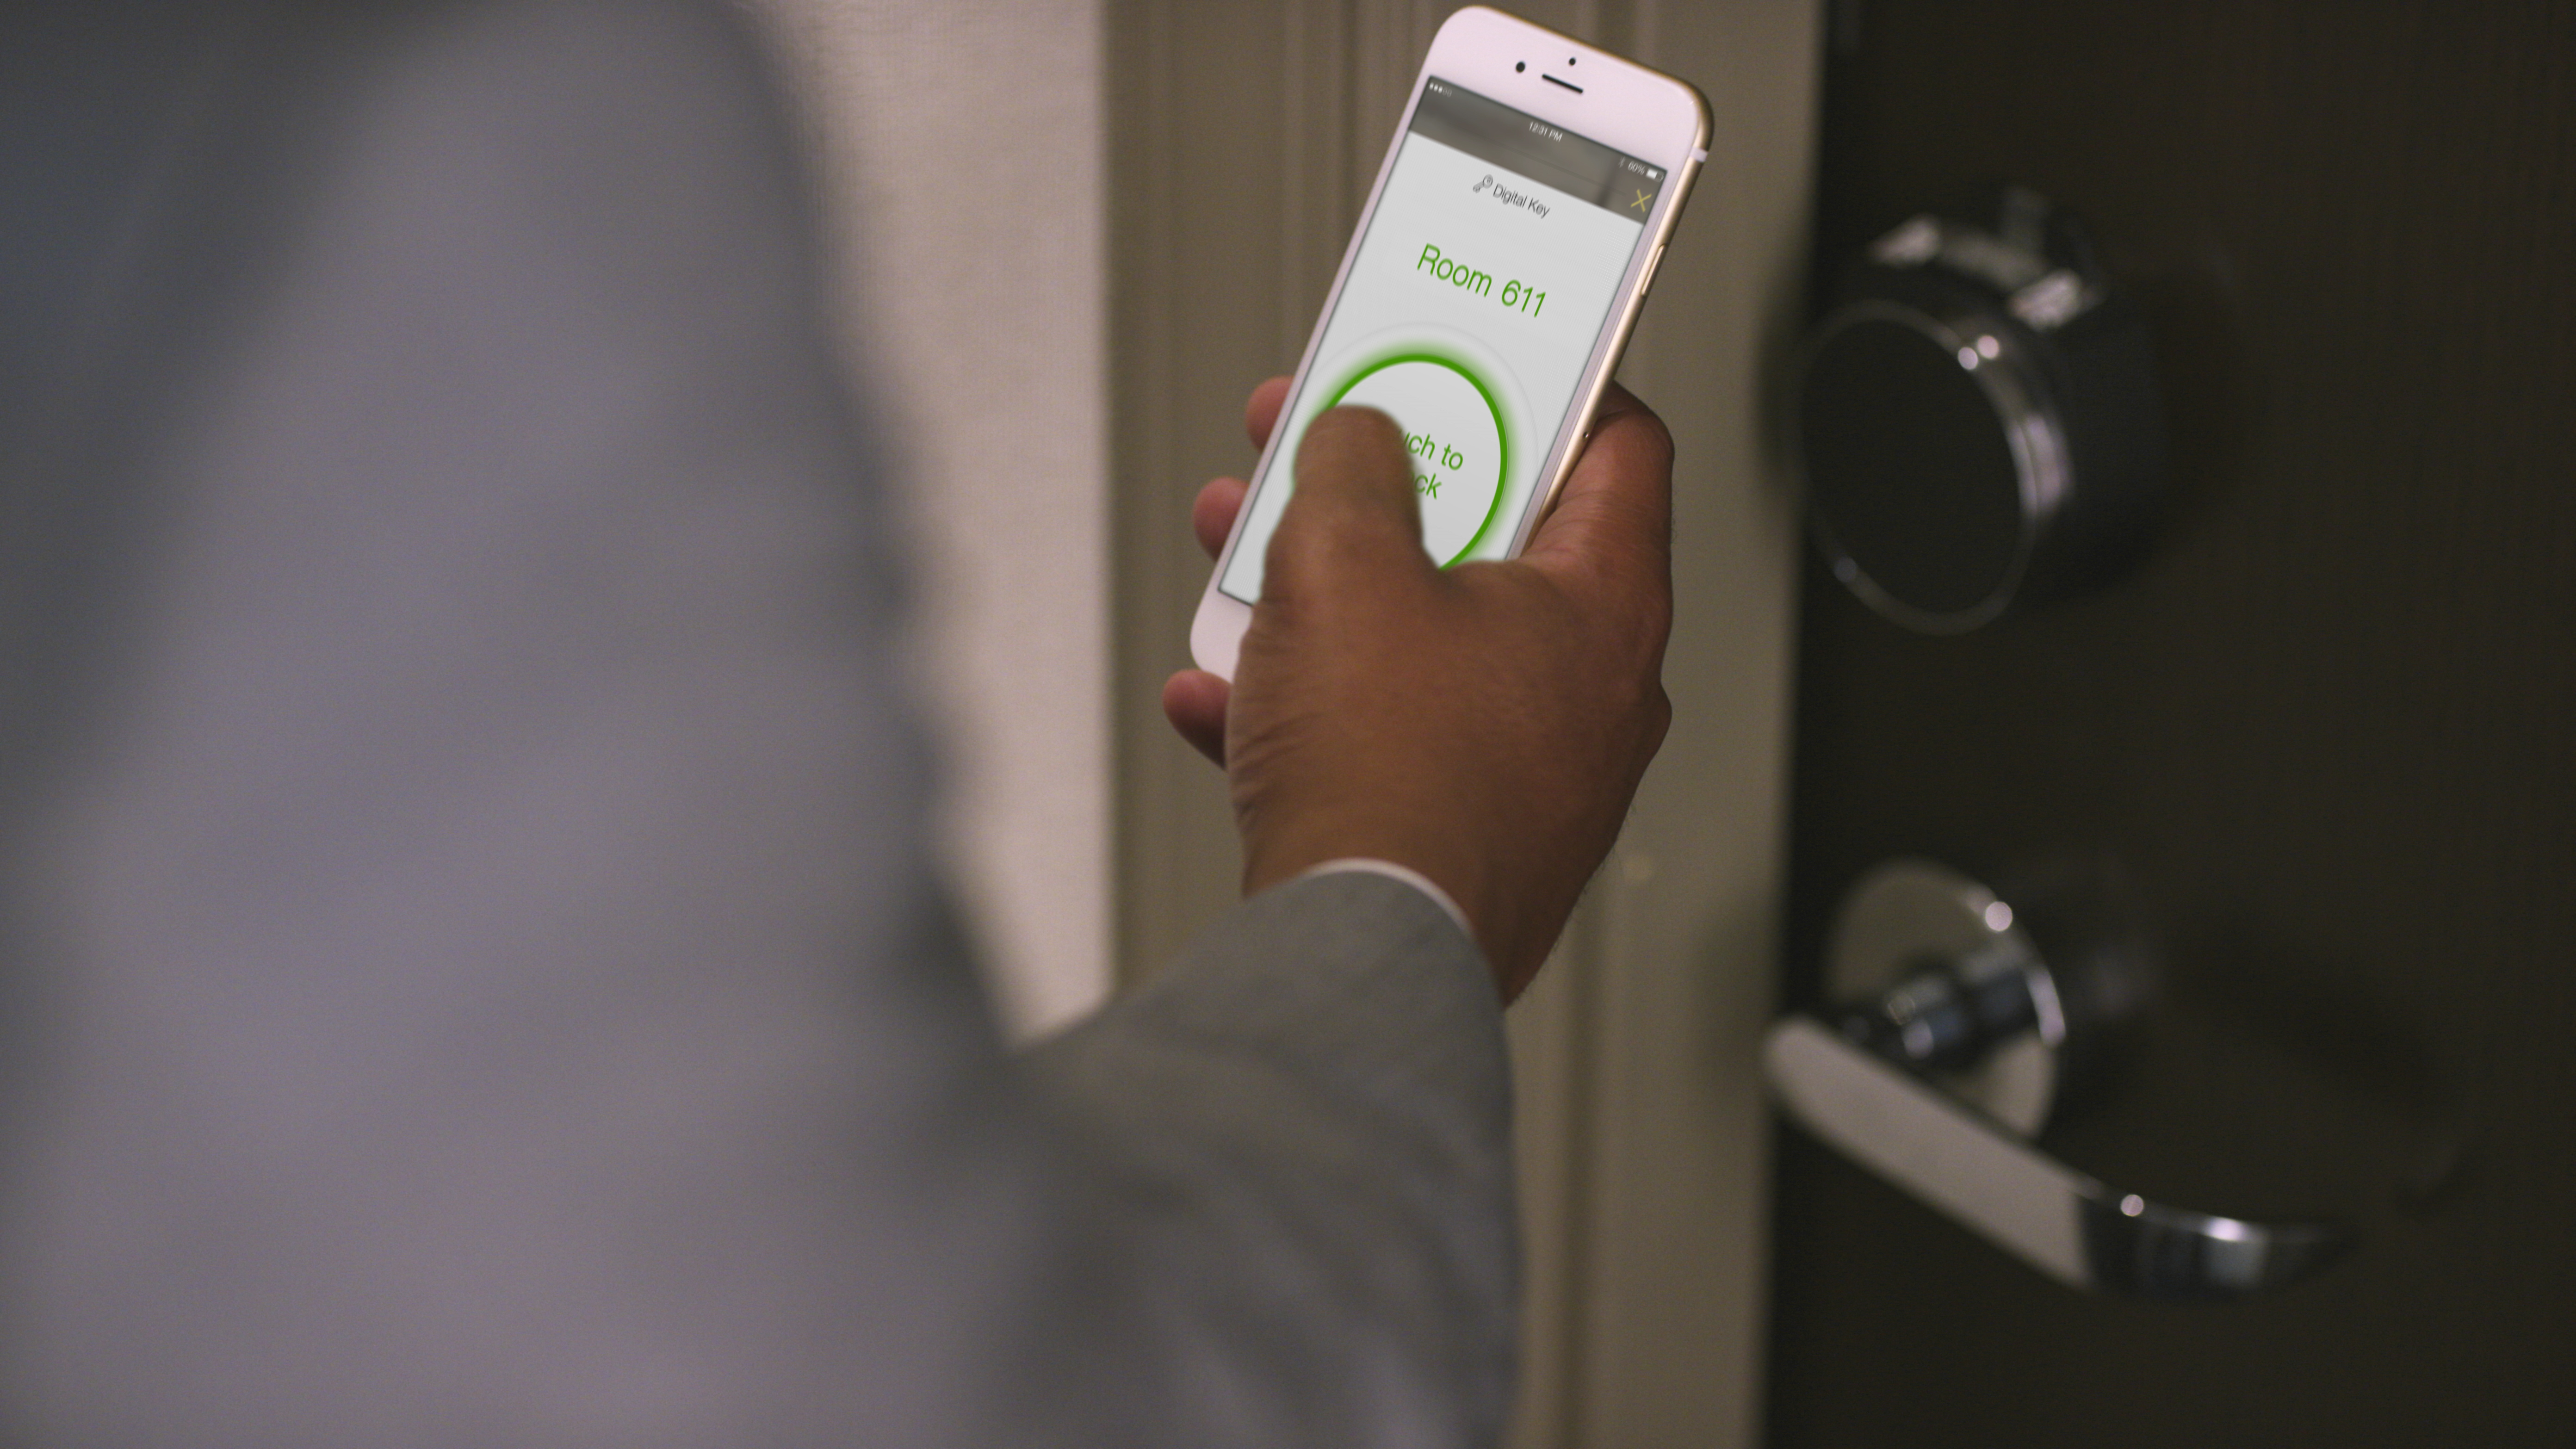 Hotelgäste werden selbstständig - Immer mehr nutzen Apps zum Check-in und zum Öffnen der Zimmertür - Smarte Travel Technology sollte für mehr Direktbuchungen sorgen - Hotelmitarbeiter gewinnen so mehr Zeit für echte Service